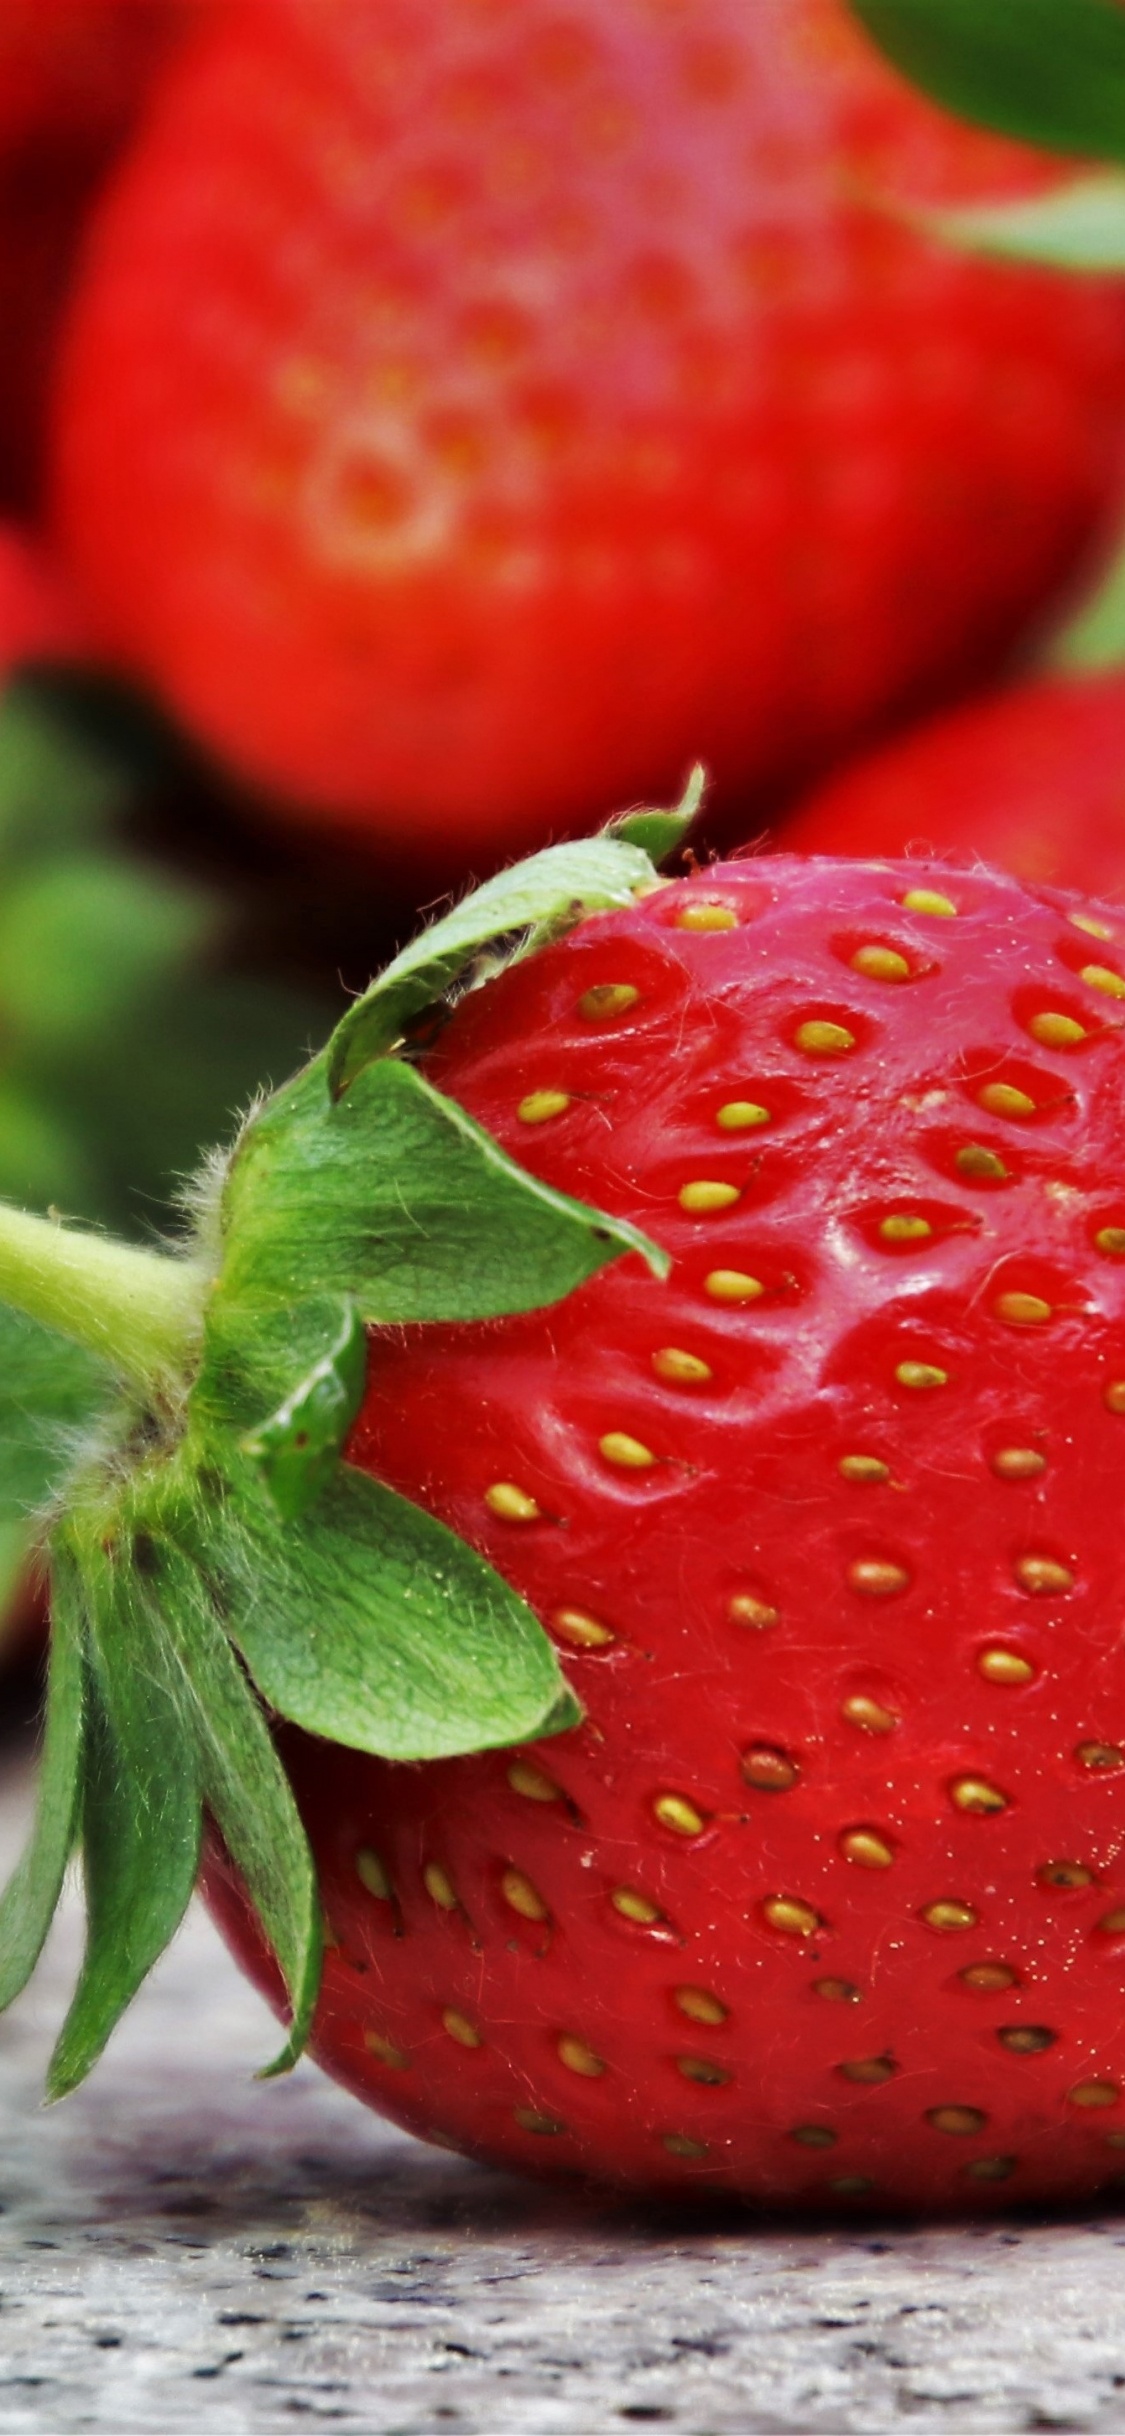 吃, 草莓, 天然的食物, 红色的, 食品 壁纸 1125x2436 允许